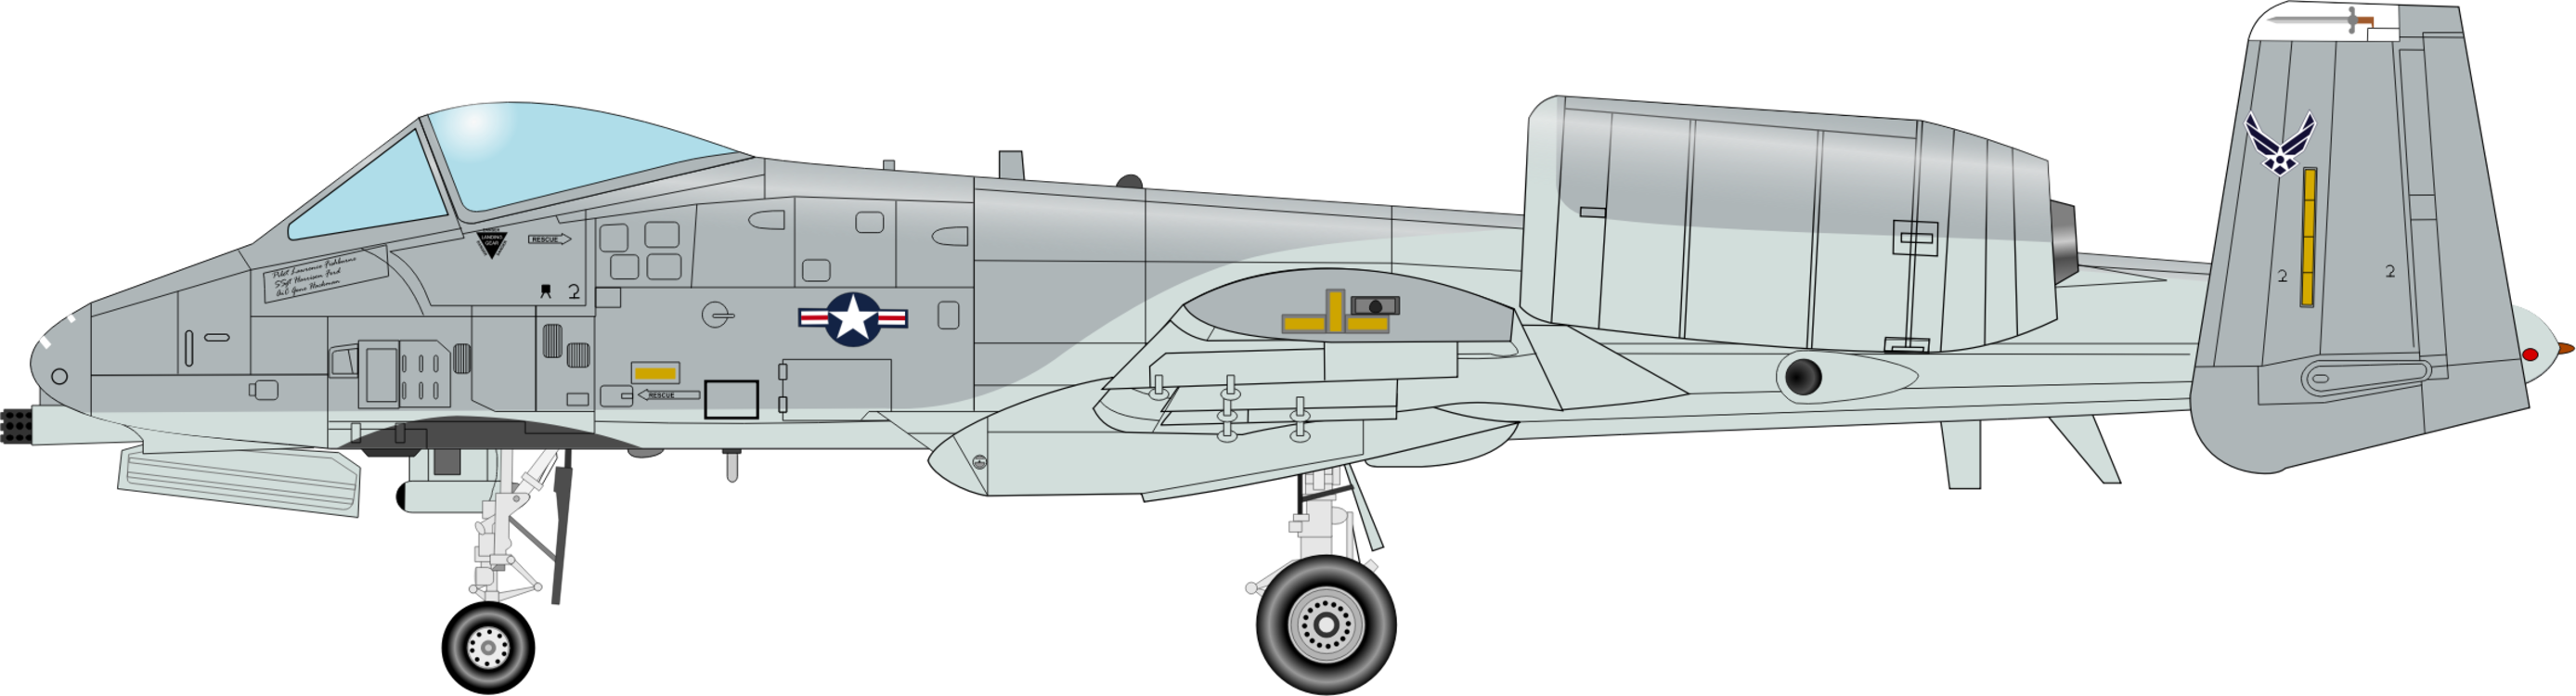 Propeller Driven Aircraft,Jet Aircraft,Air Force